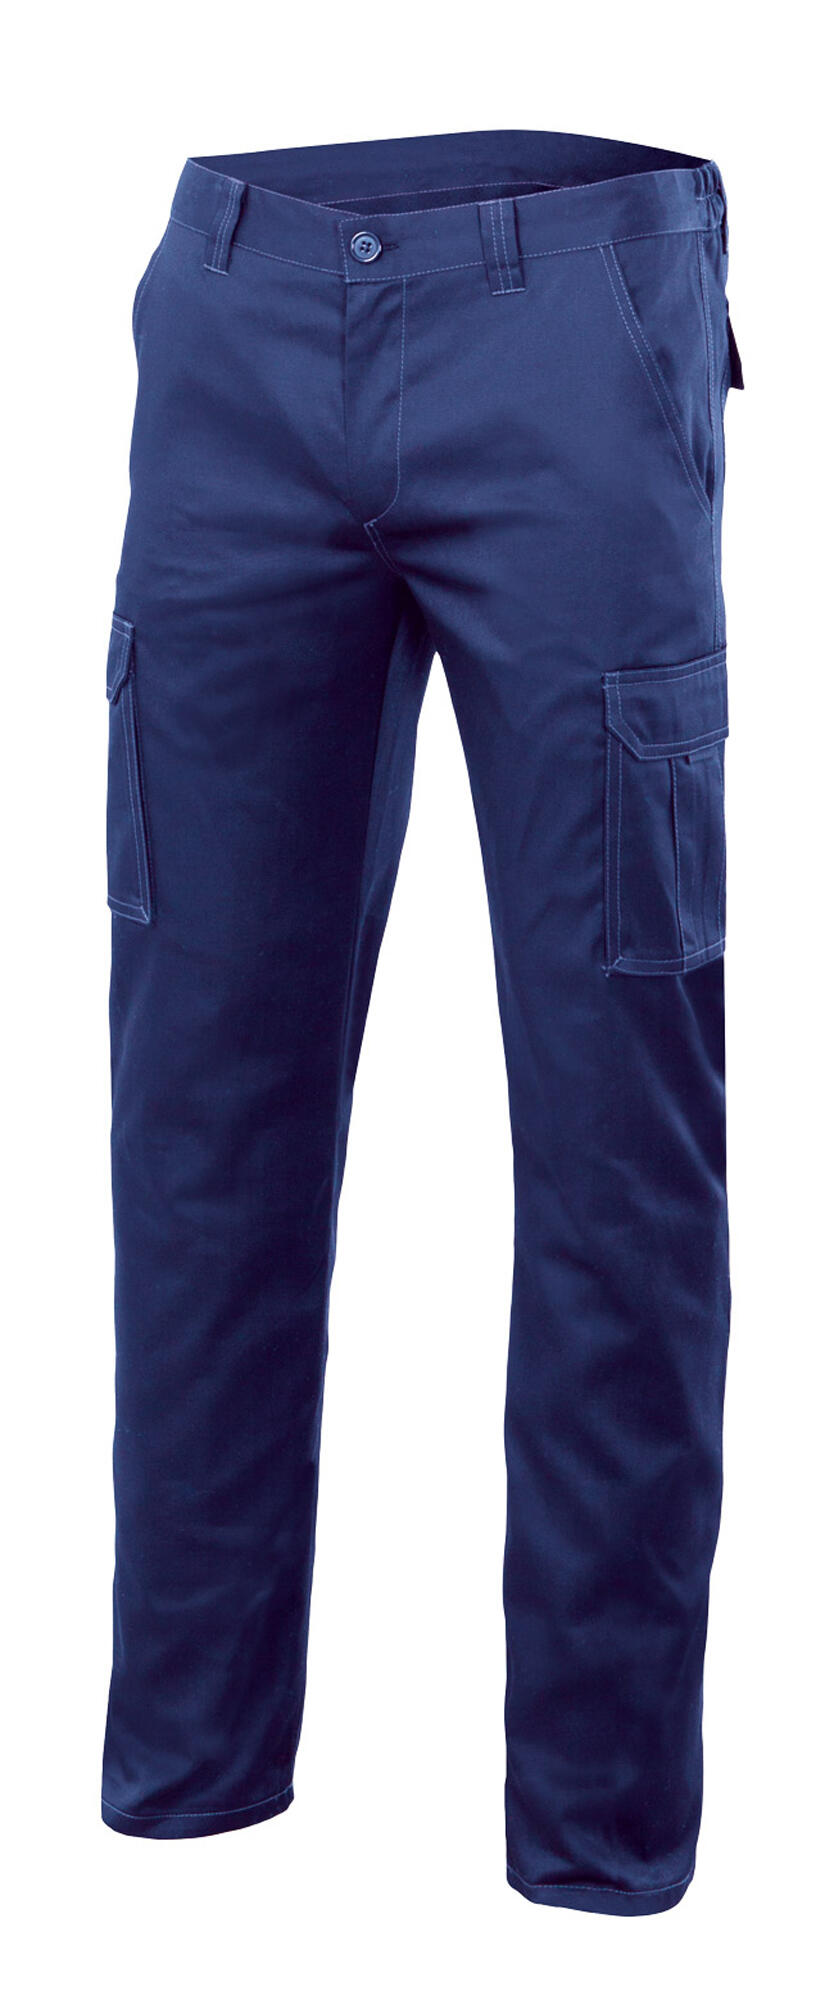 Pantalon de trabajo multibolsillo stretch azulina t60